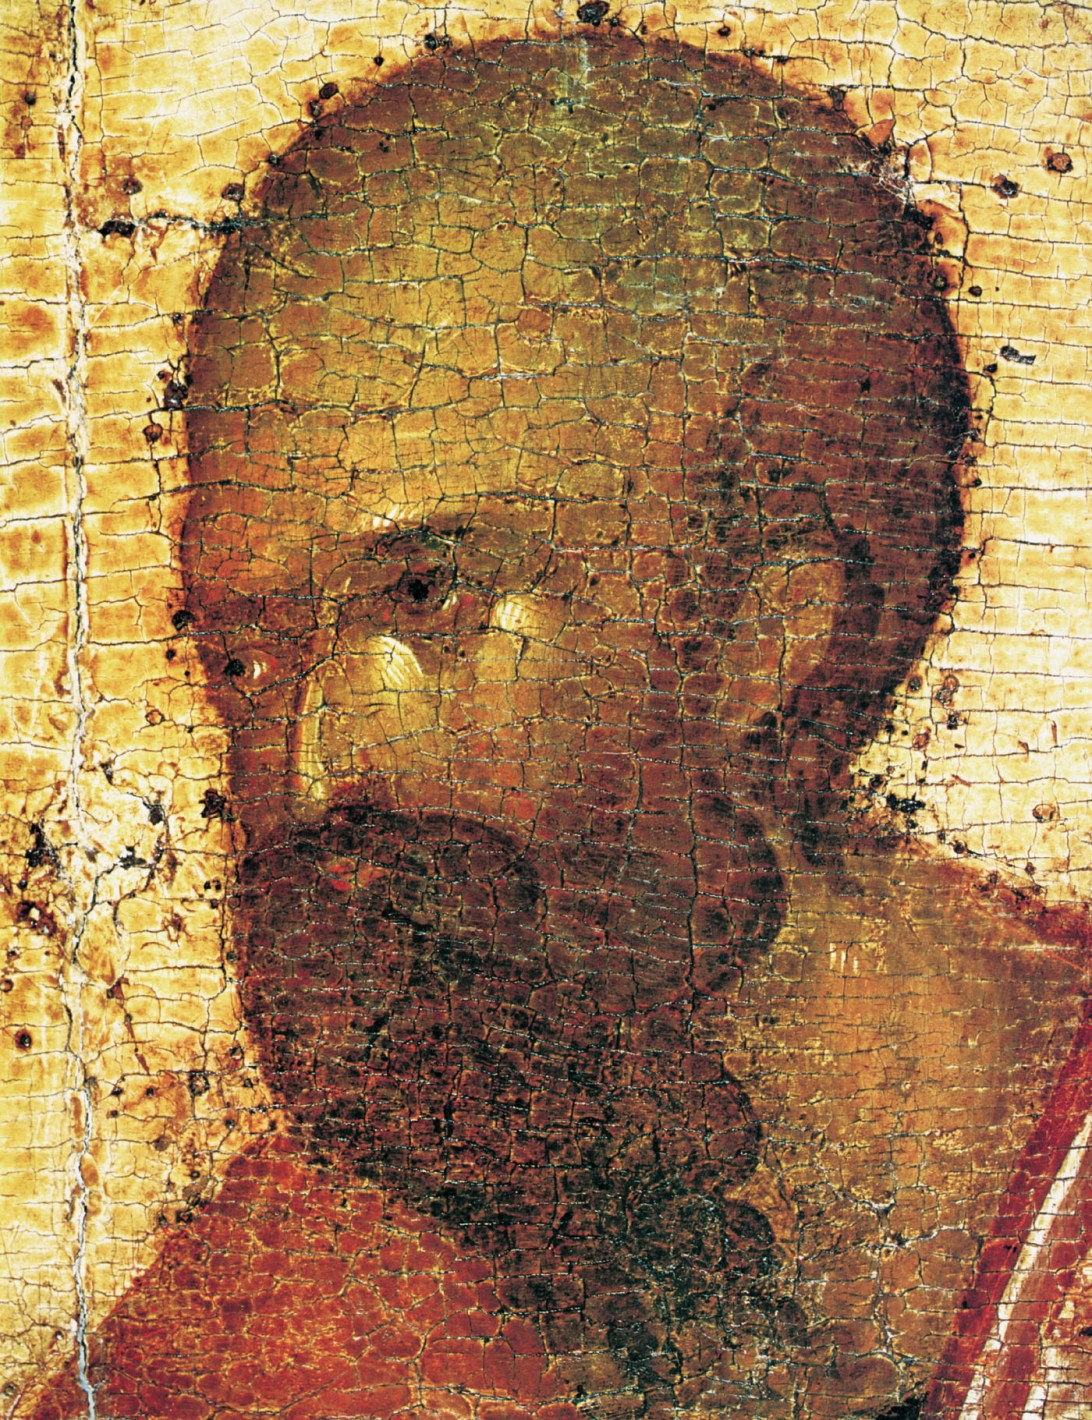 Апостол Павел. Деталь иконостаса Благовещенского собора Московского кремля, 1405 год. Иконописец Феофан Грек